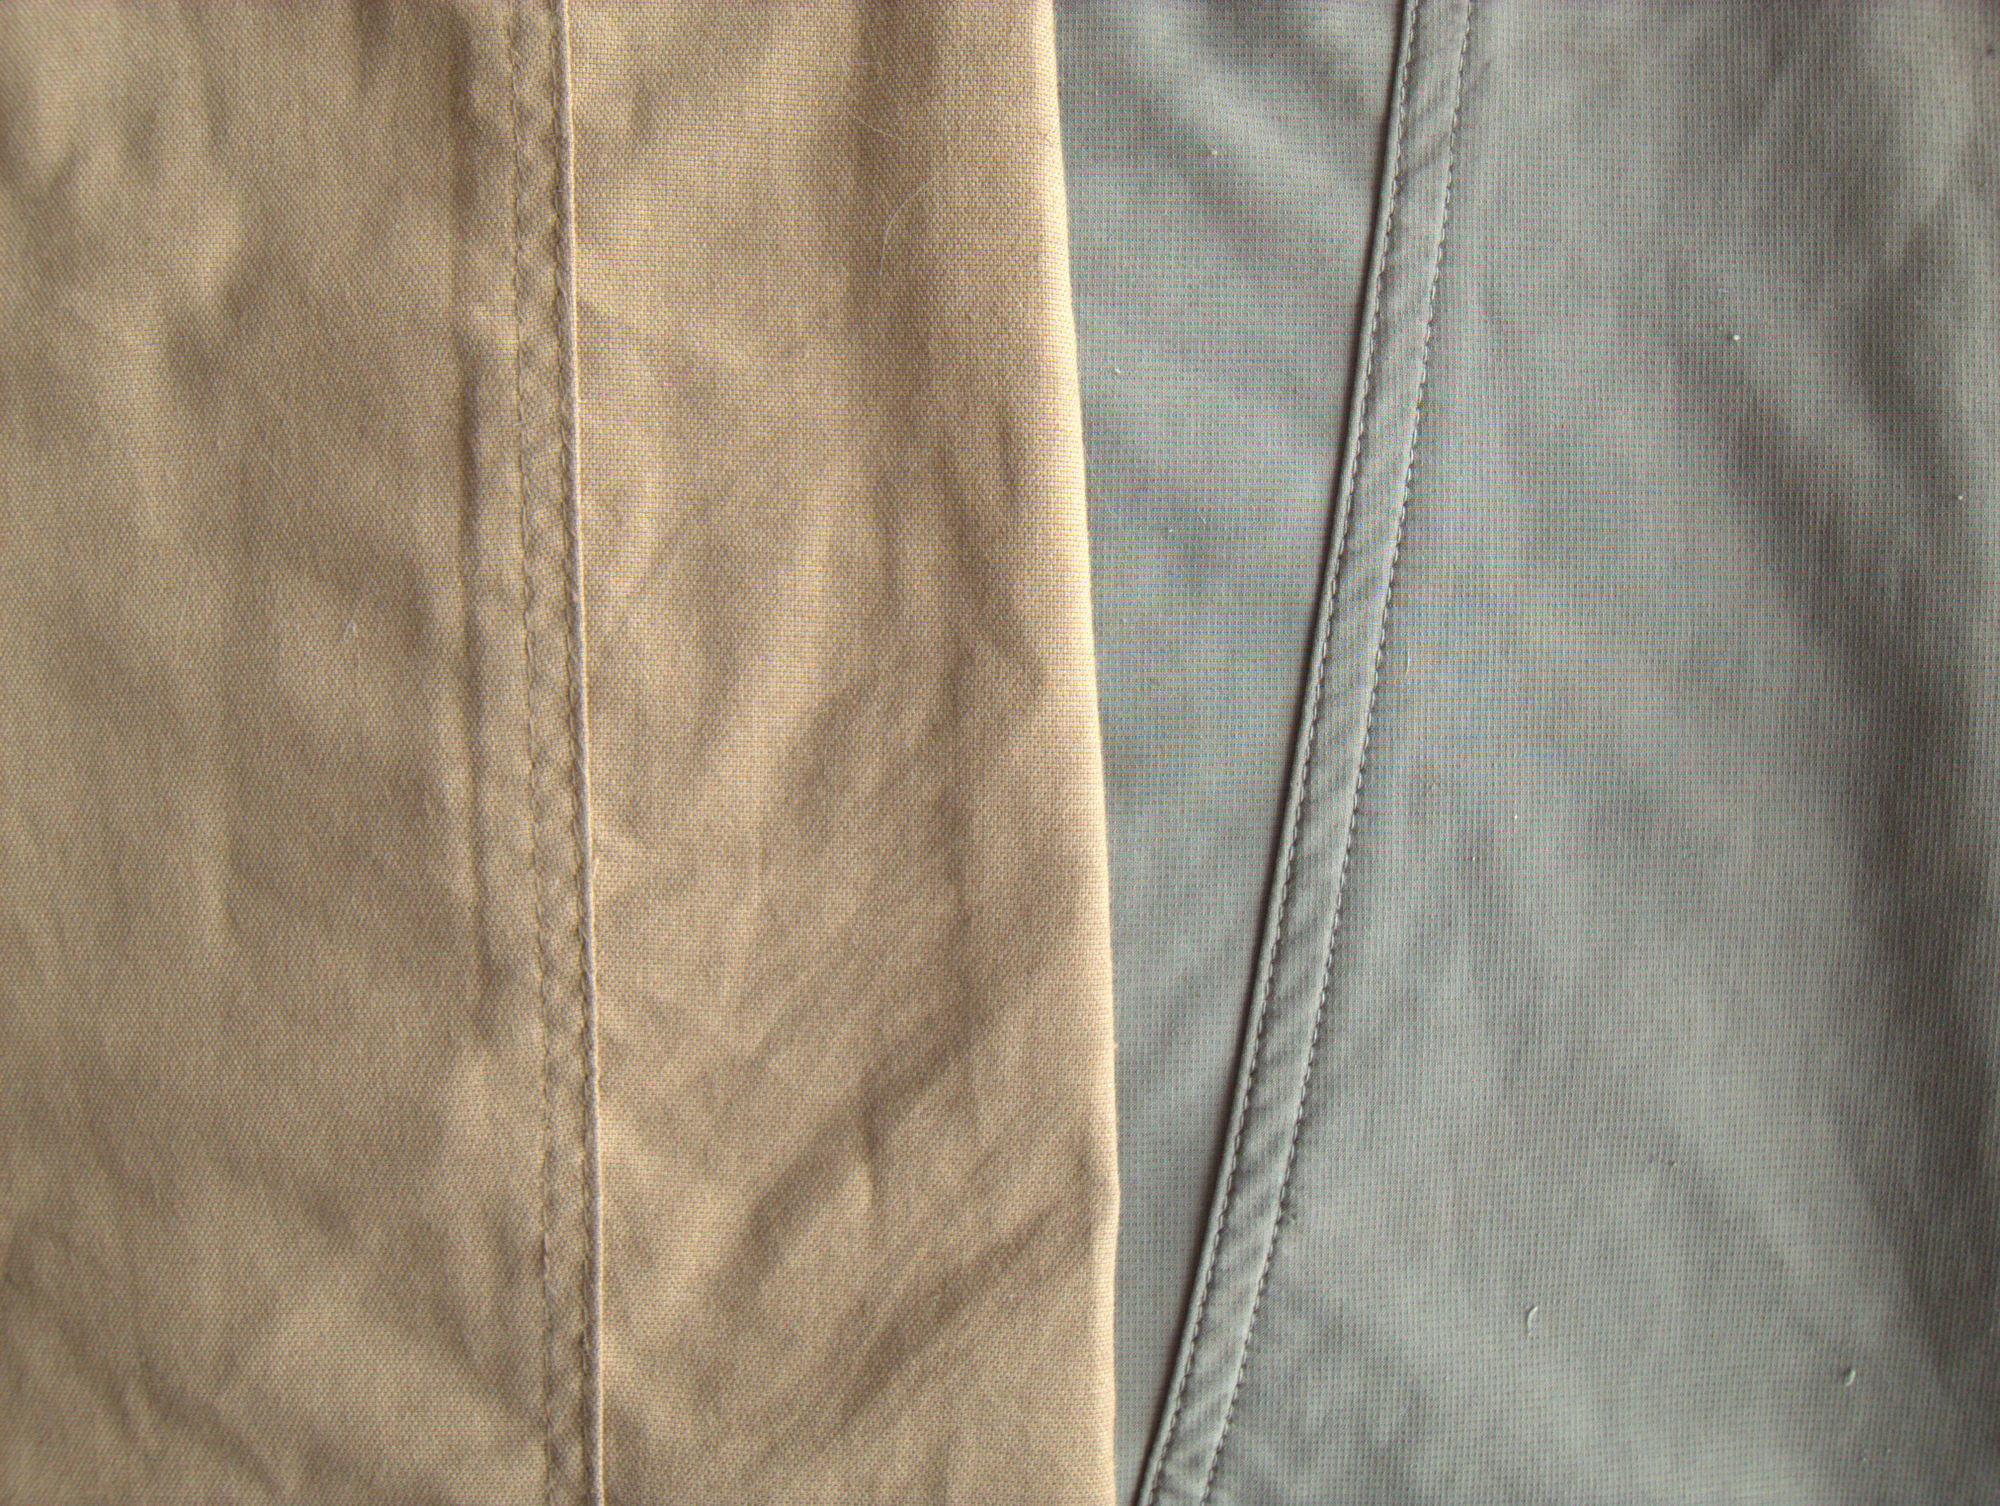 Cotton clothes closeup photo